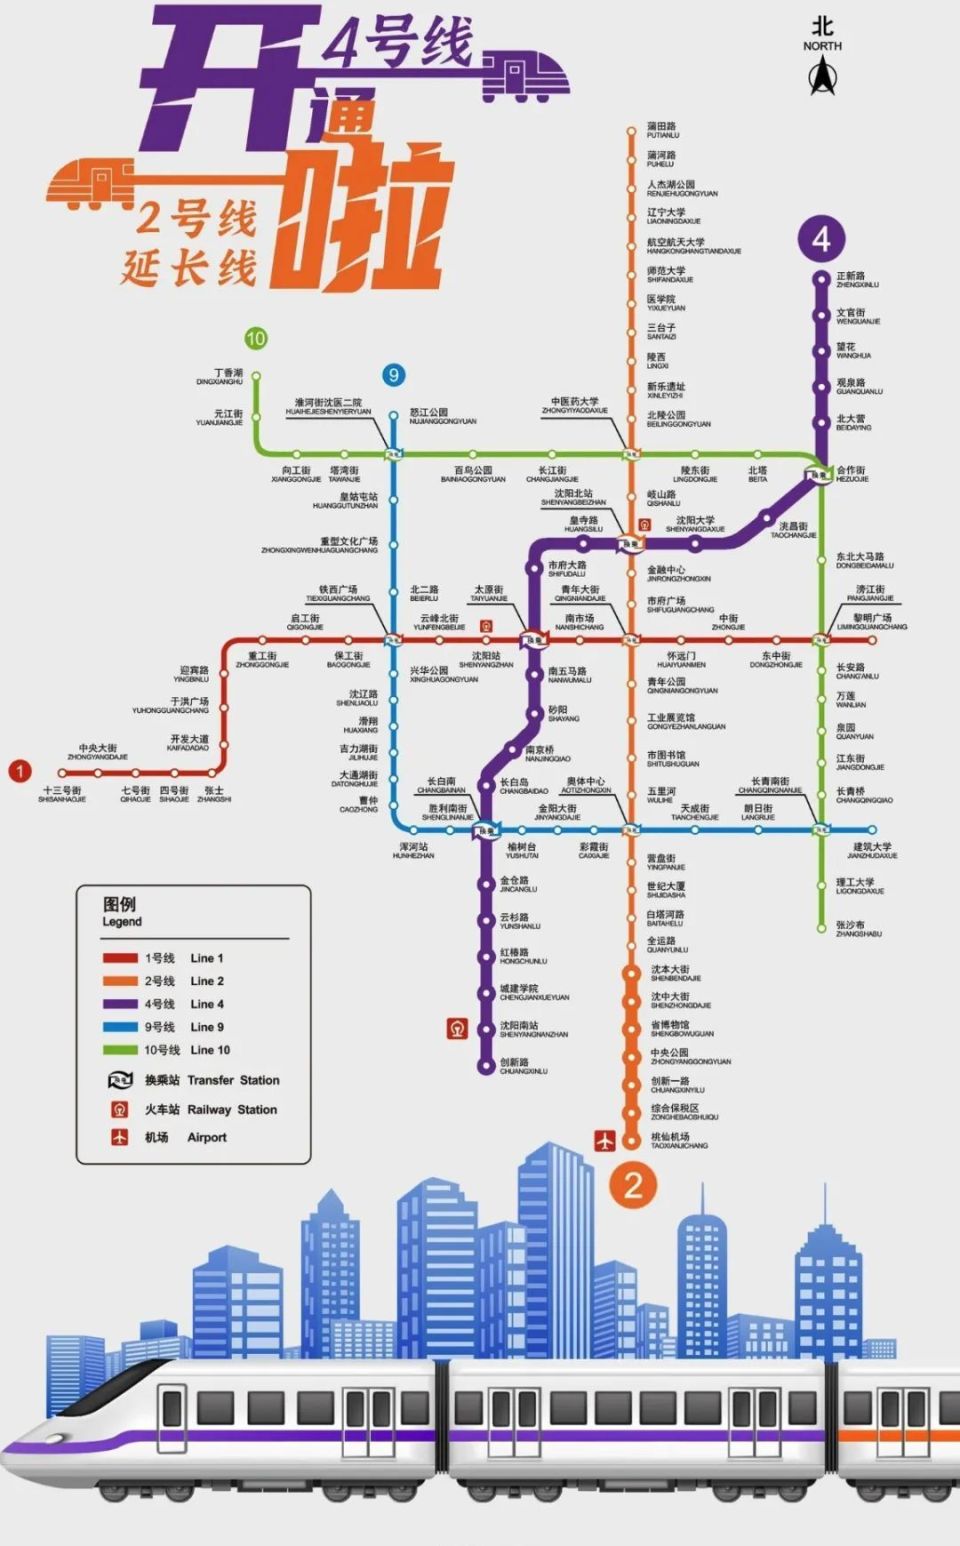 2023年9月29日,沈阳市民万众期待的地铁四号线一期正式开通,沈阳步入